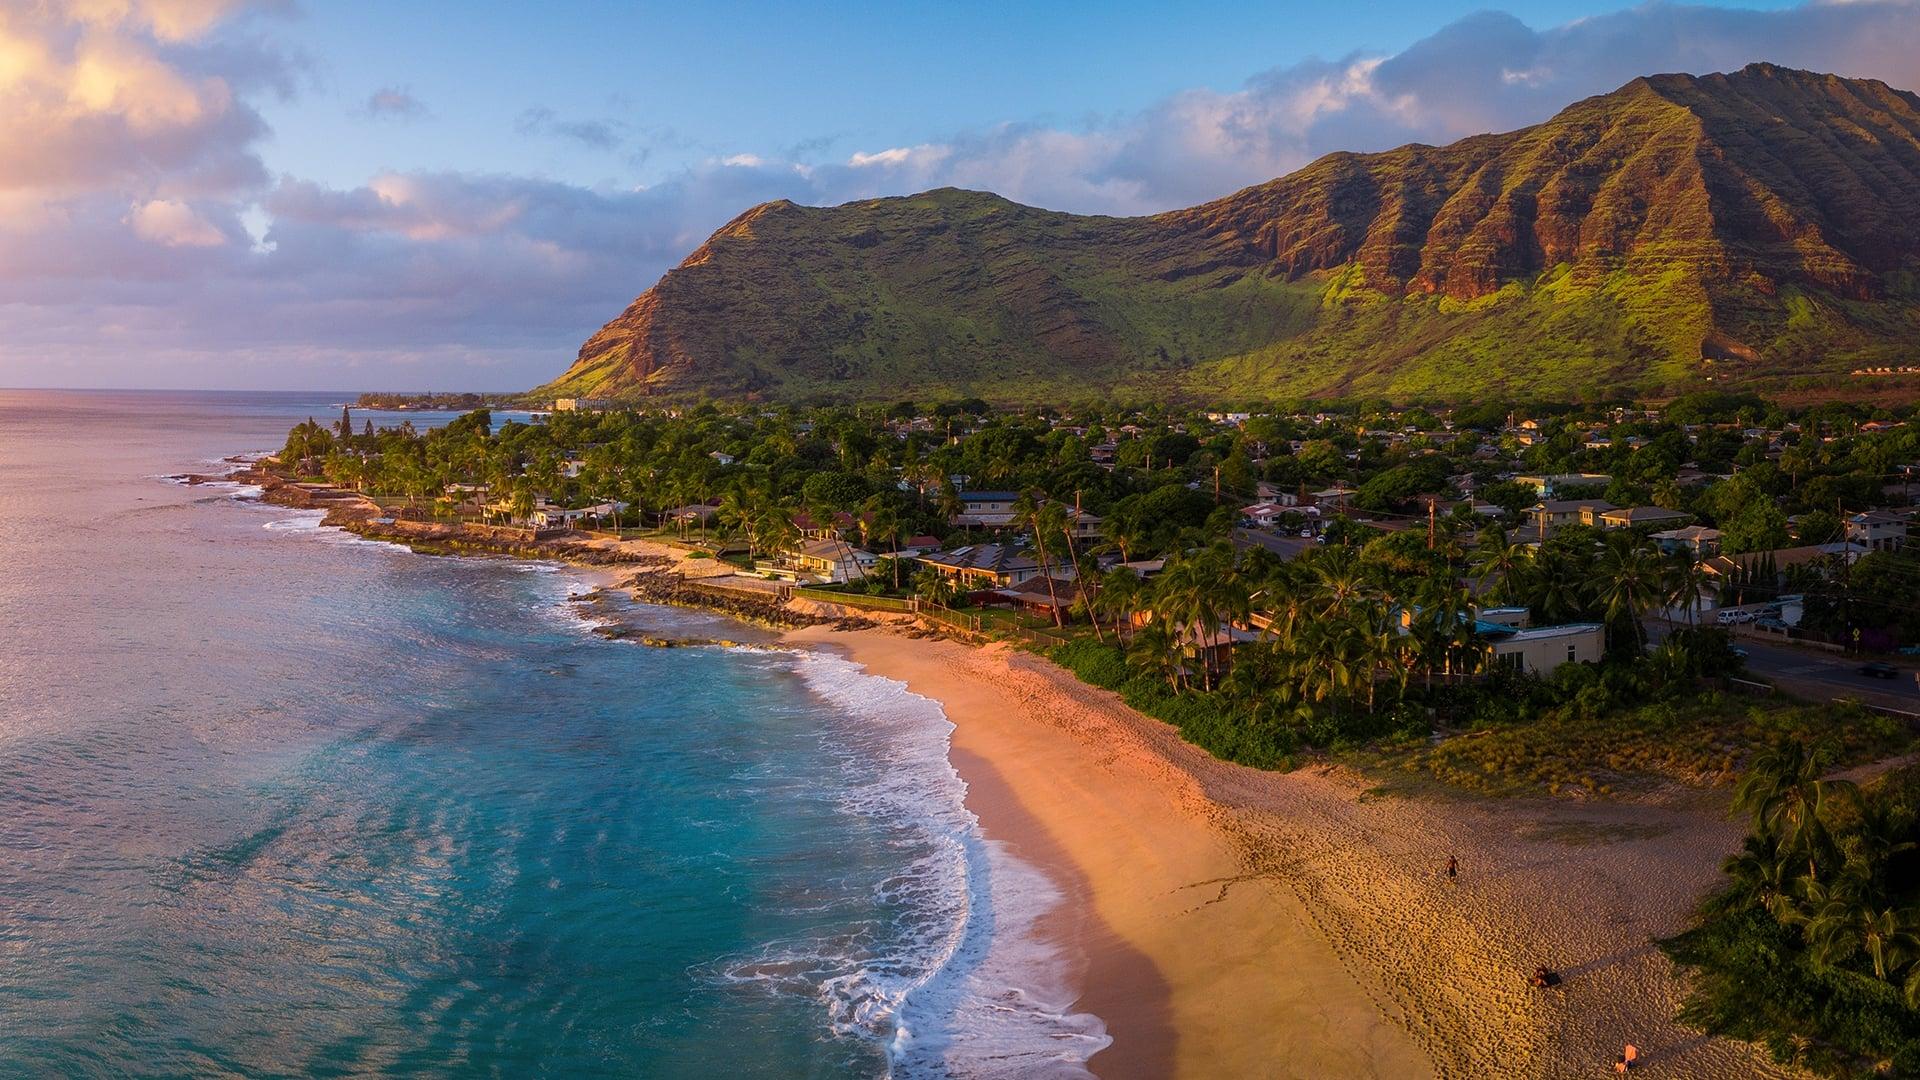 Wild Hawaii backdrop